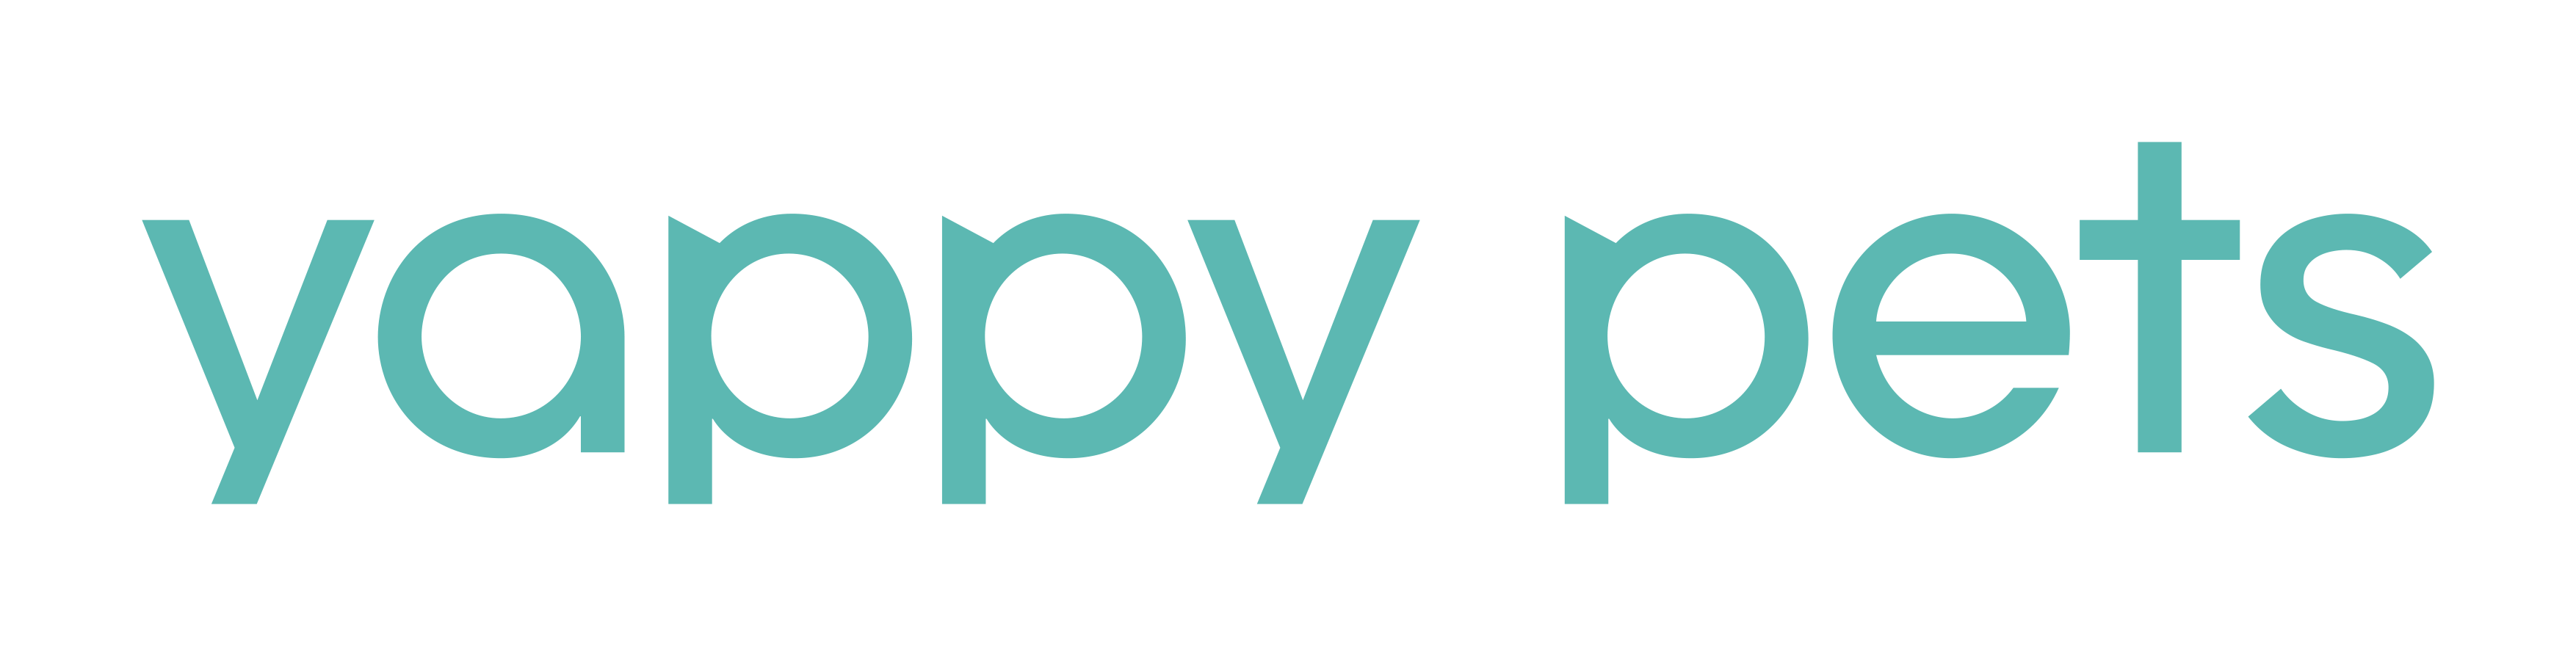 Yappy Pets Pte. Ltd. company logo